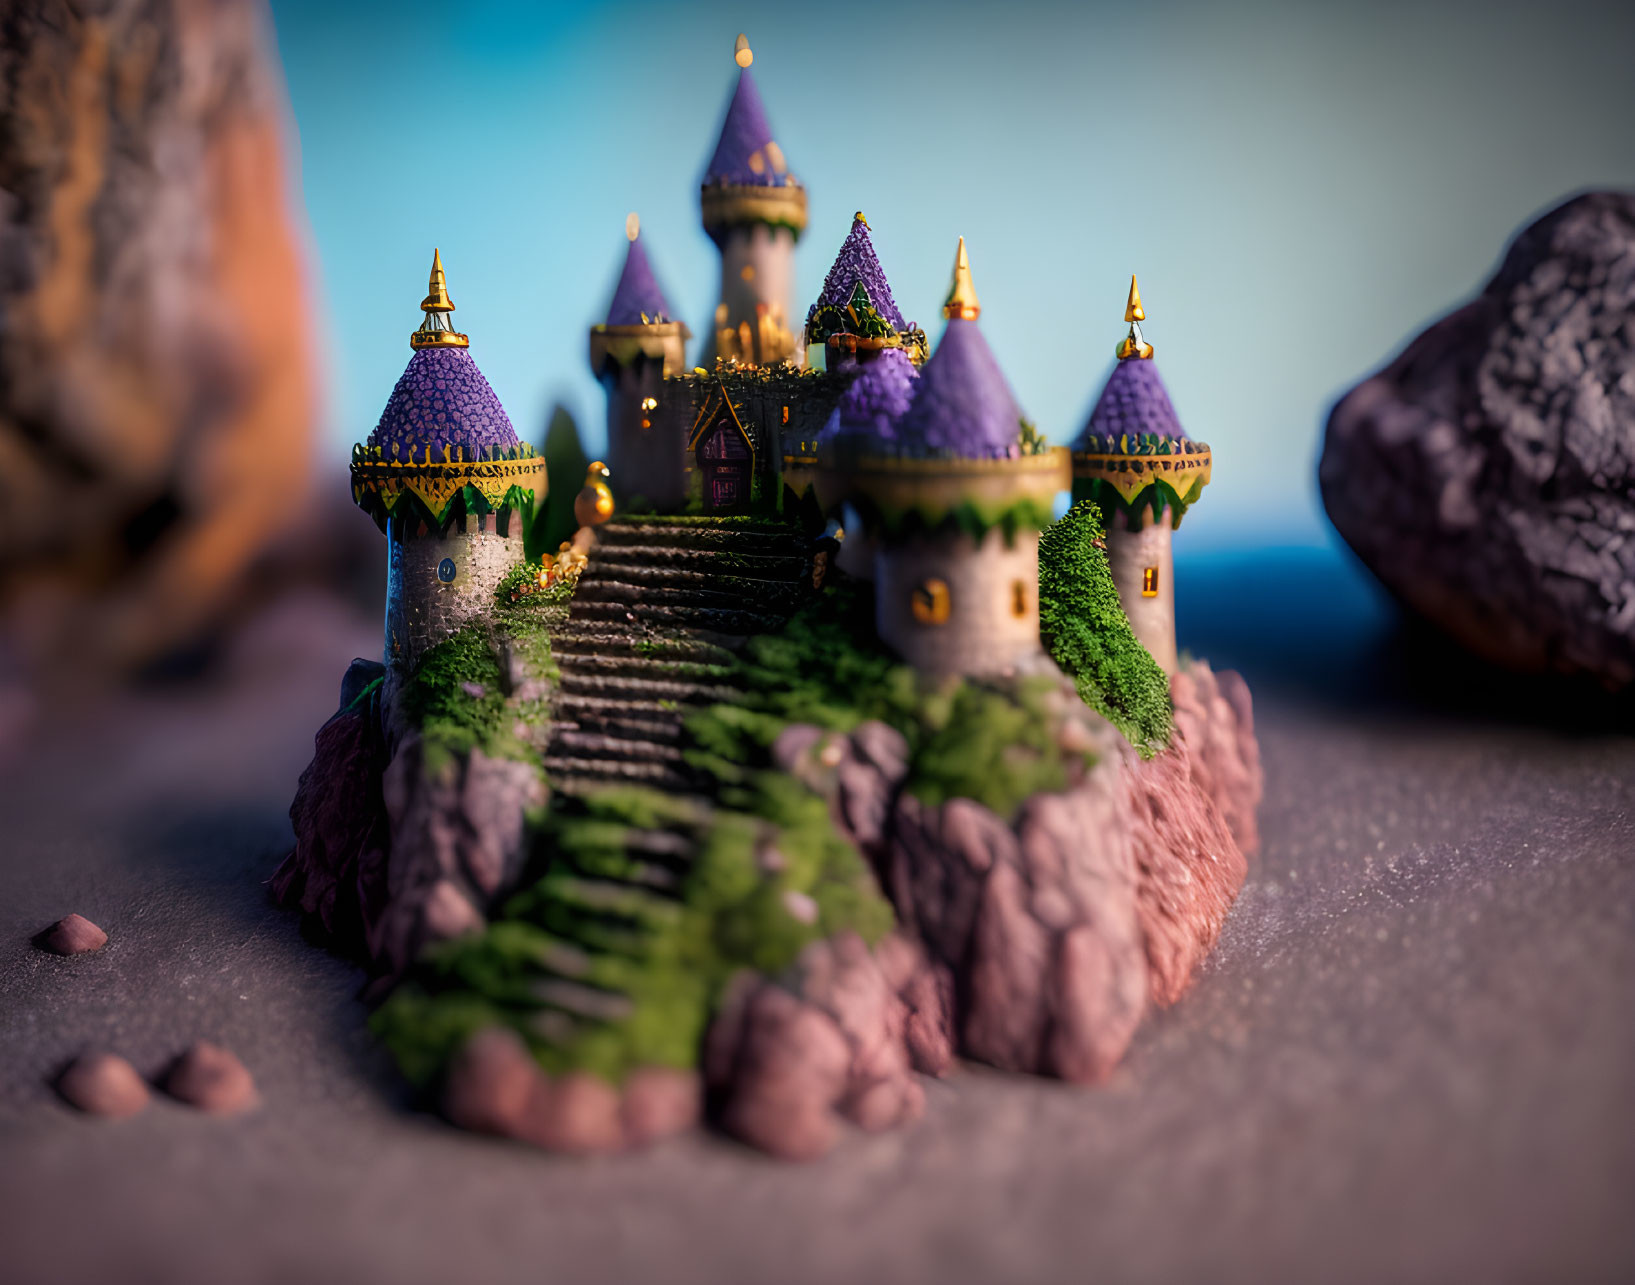 Castle minifigures